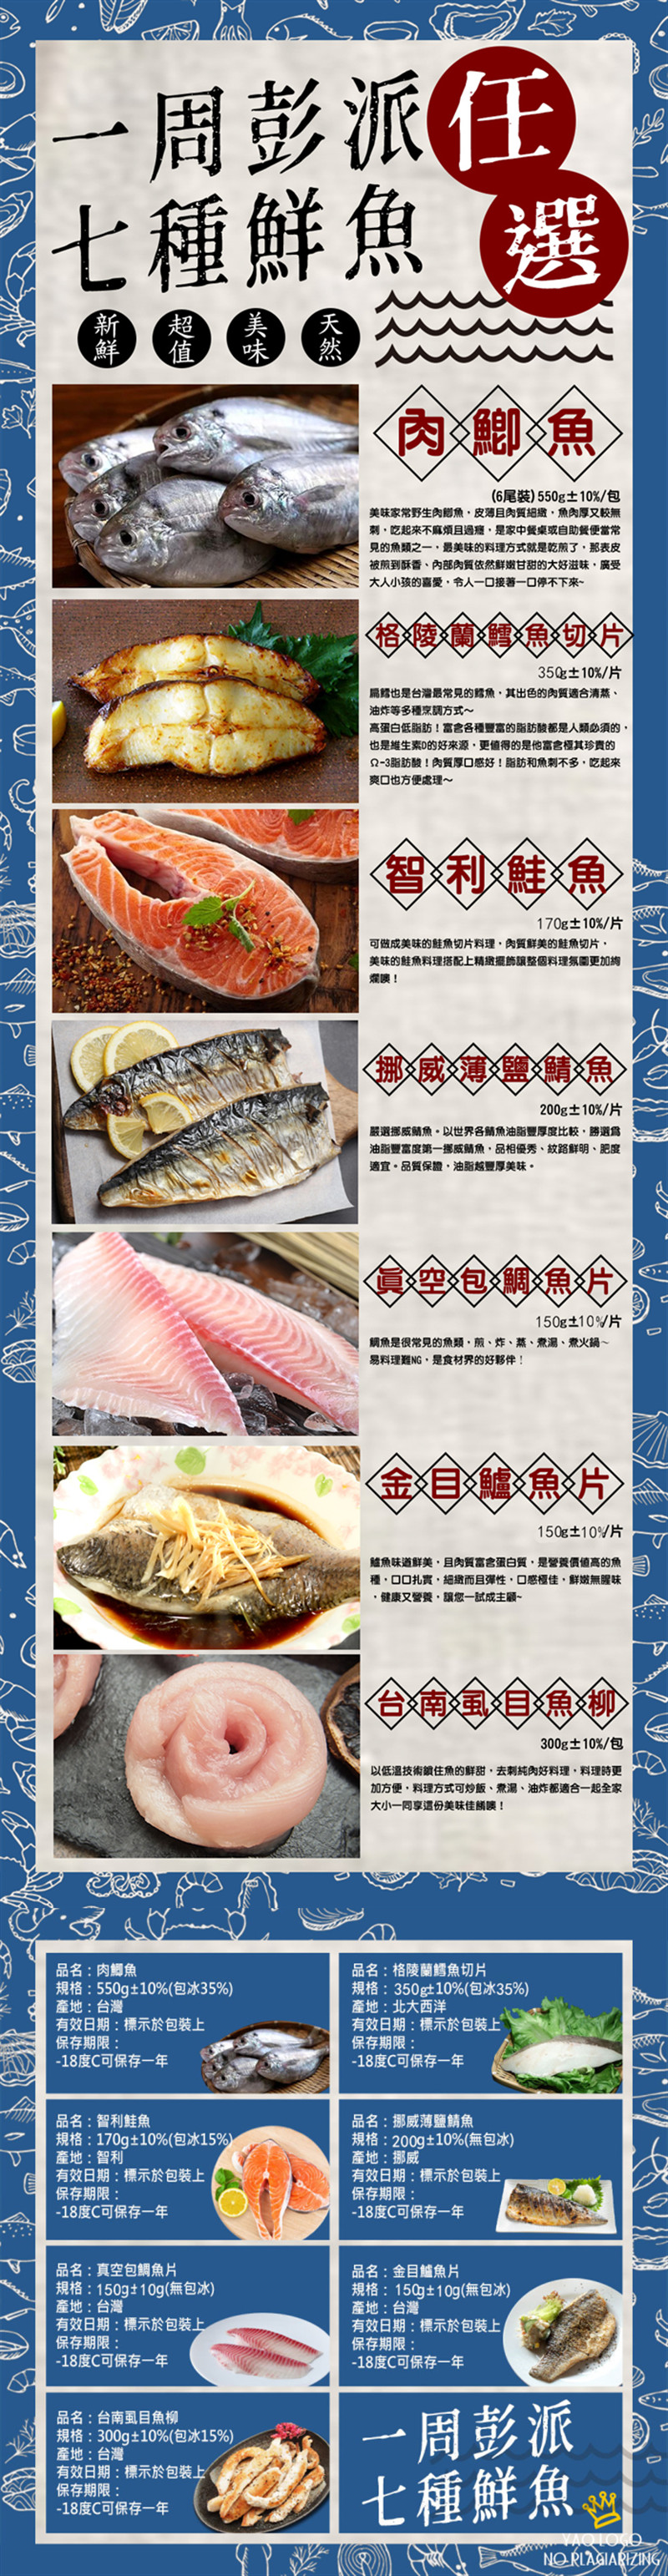 一周澎派七種鮮魚任選(格陵蘭鱈魚切片、智利鮭魚、薄鹽鯖魚、鯛魚片、金目鱸魚片)